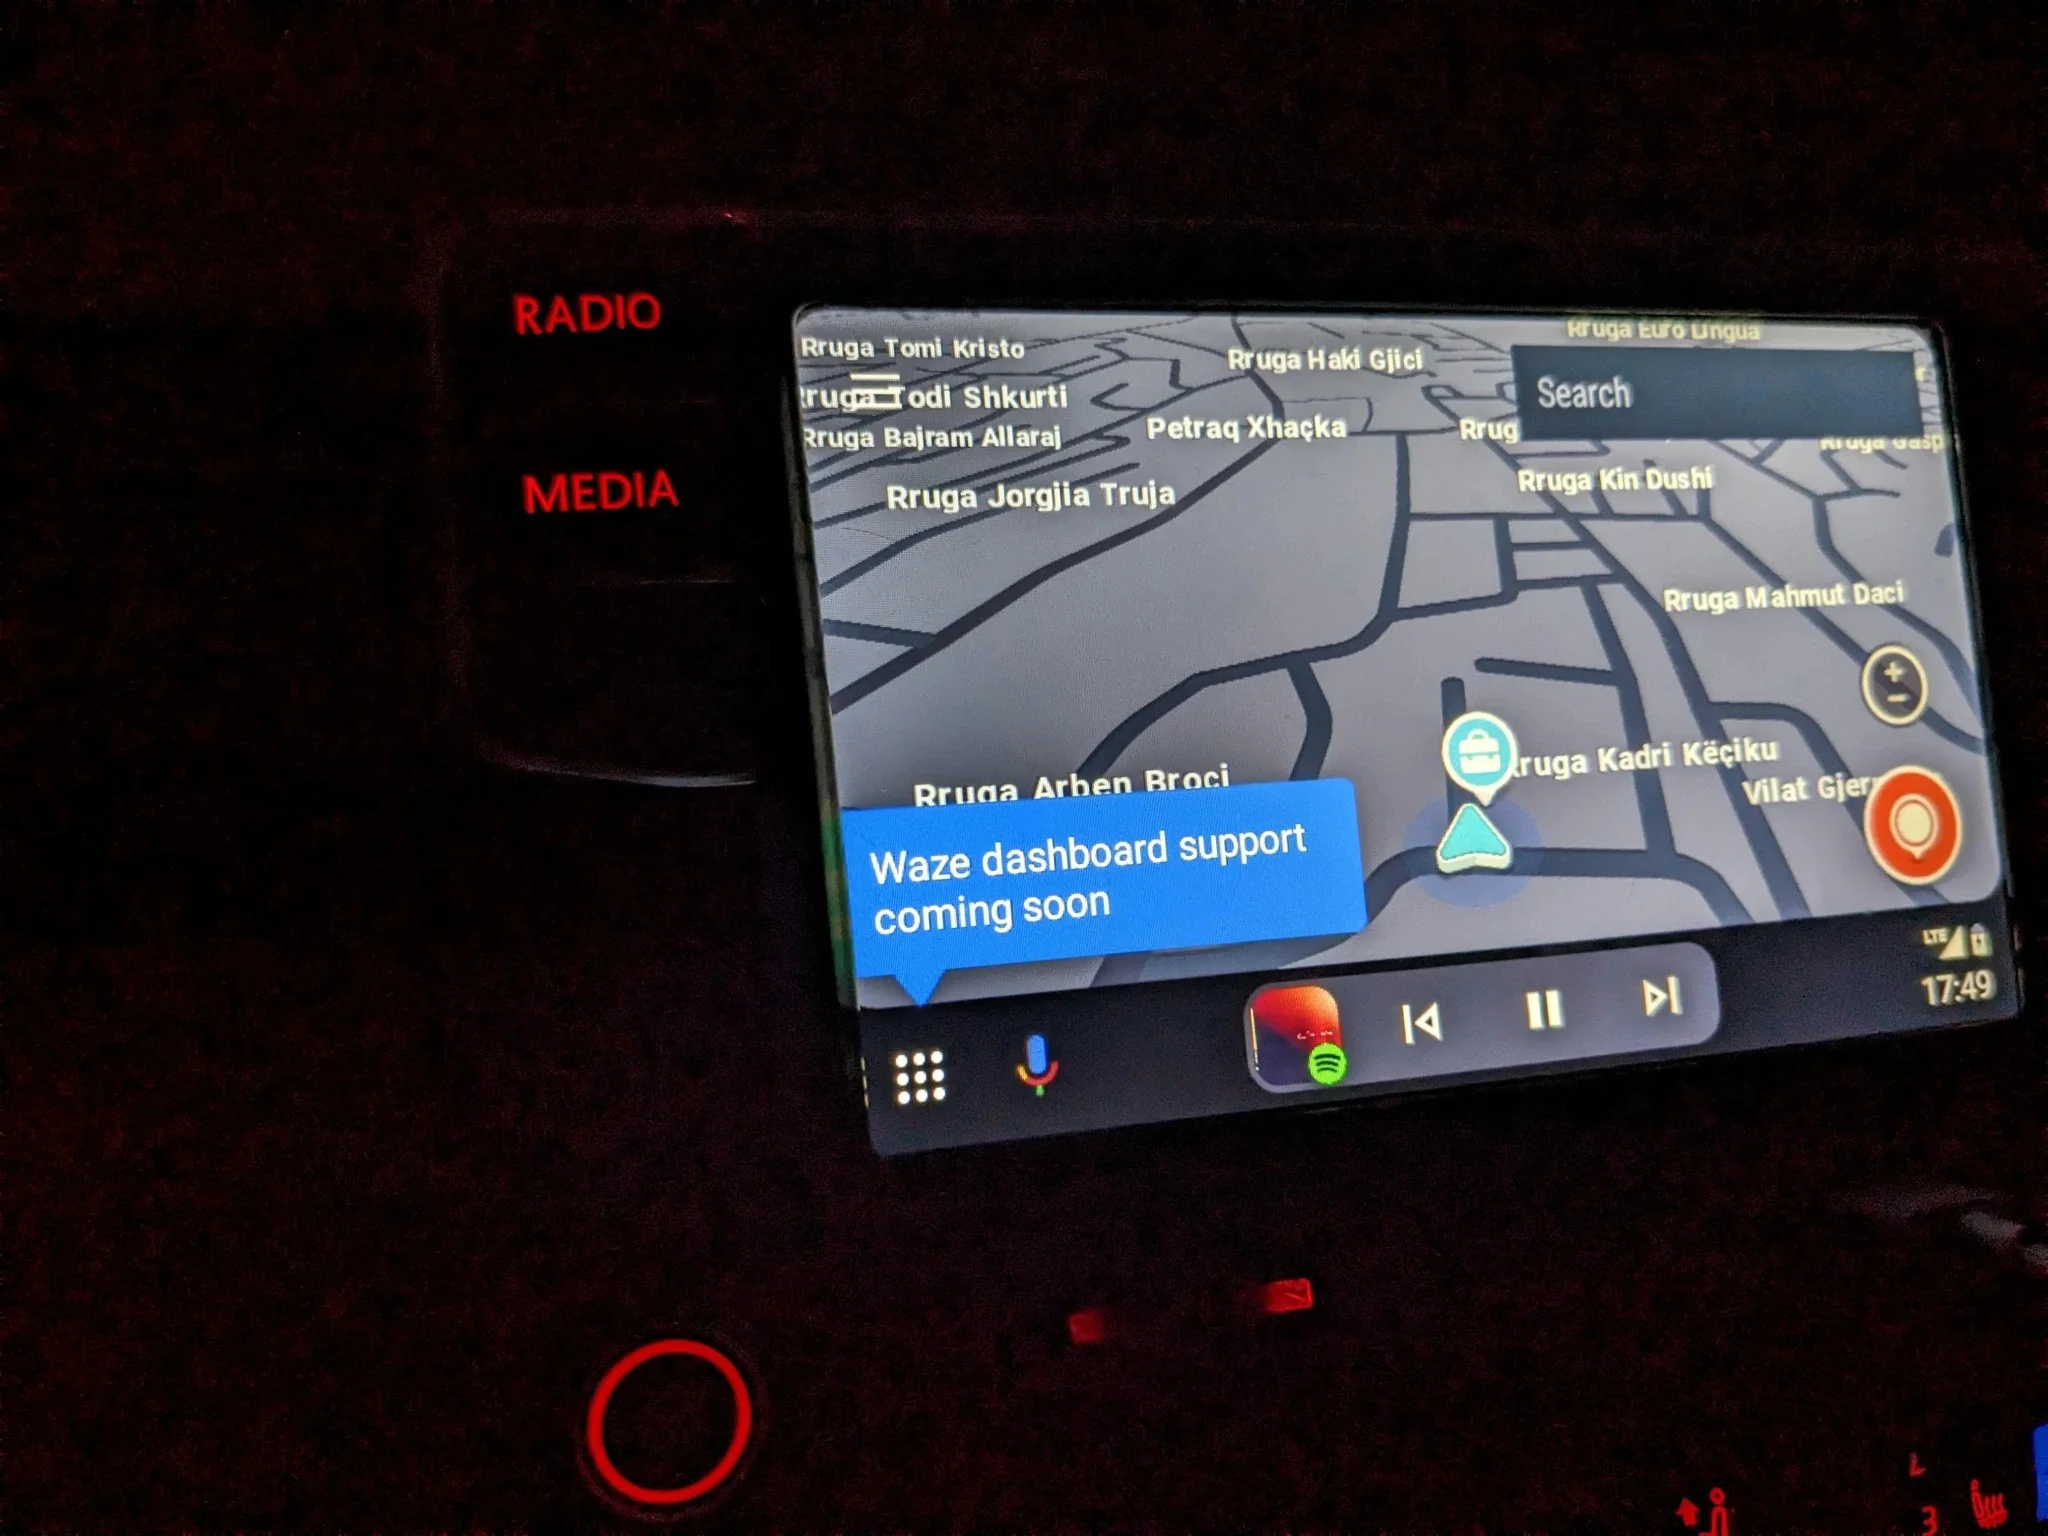 Mensagem indica que a tela dividida do Waze chegará em breve ao Android Auto beta.